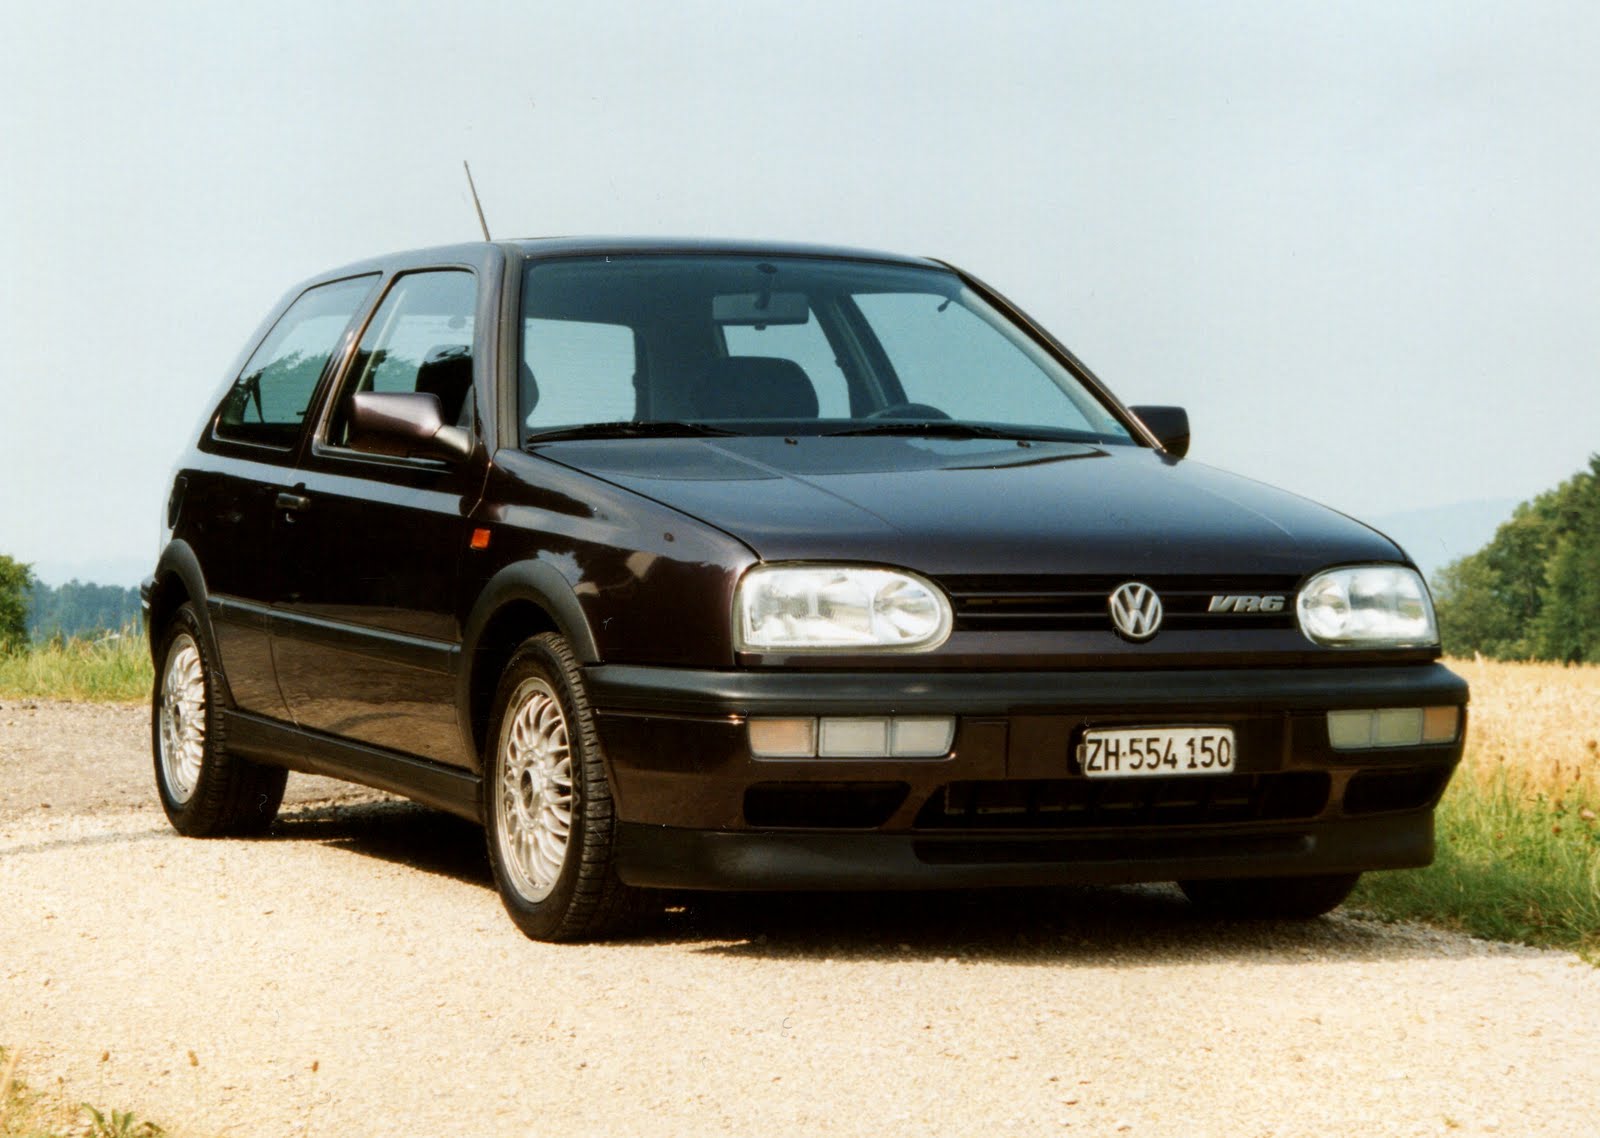 Volkswagen vr6. Фольксваген гольф 3 vr6. Volkswagen Golf 3 GTI vr6. VW Golf mk3. Volkswagen Golf III GTI vr6.